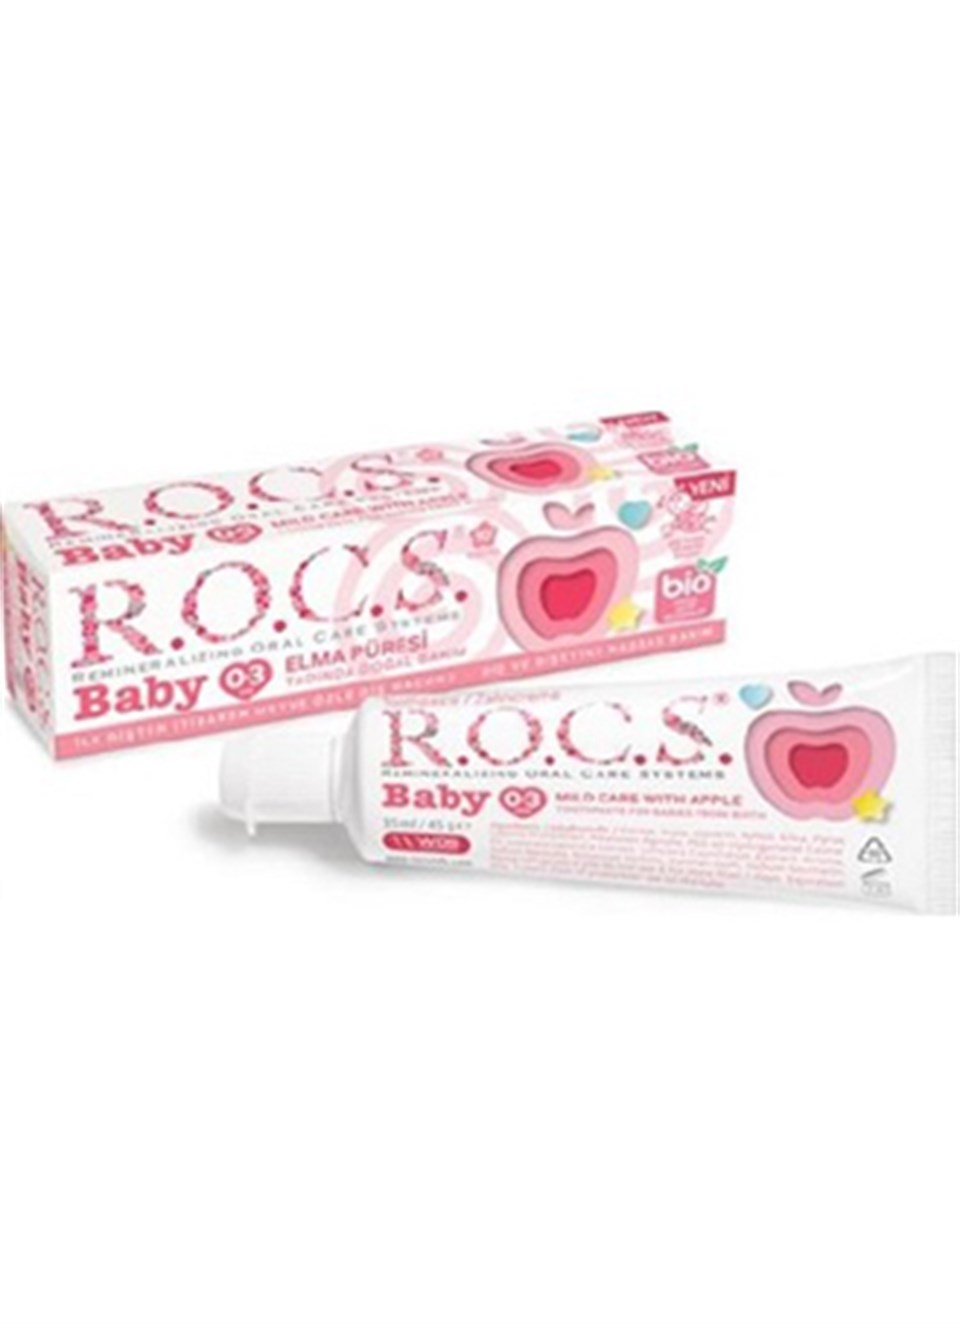 ROCS Baby 0-3 Yaş Diş Macunu 35 ml / Elma Püresi - 1